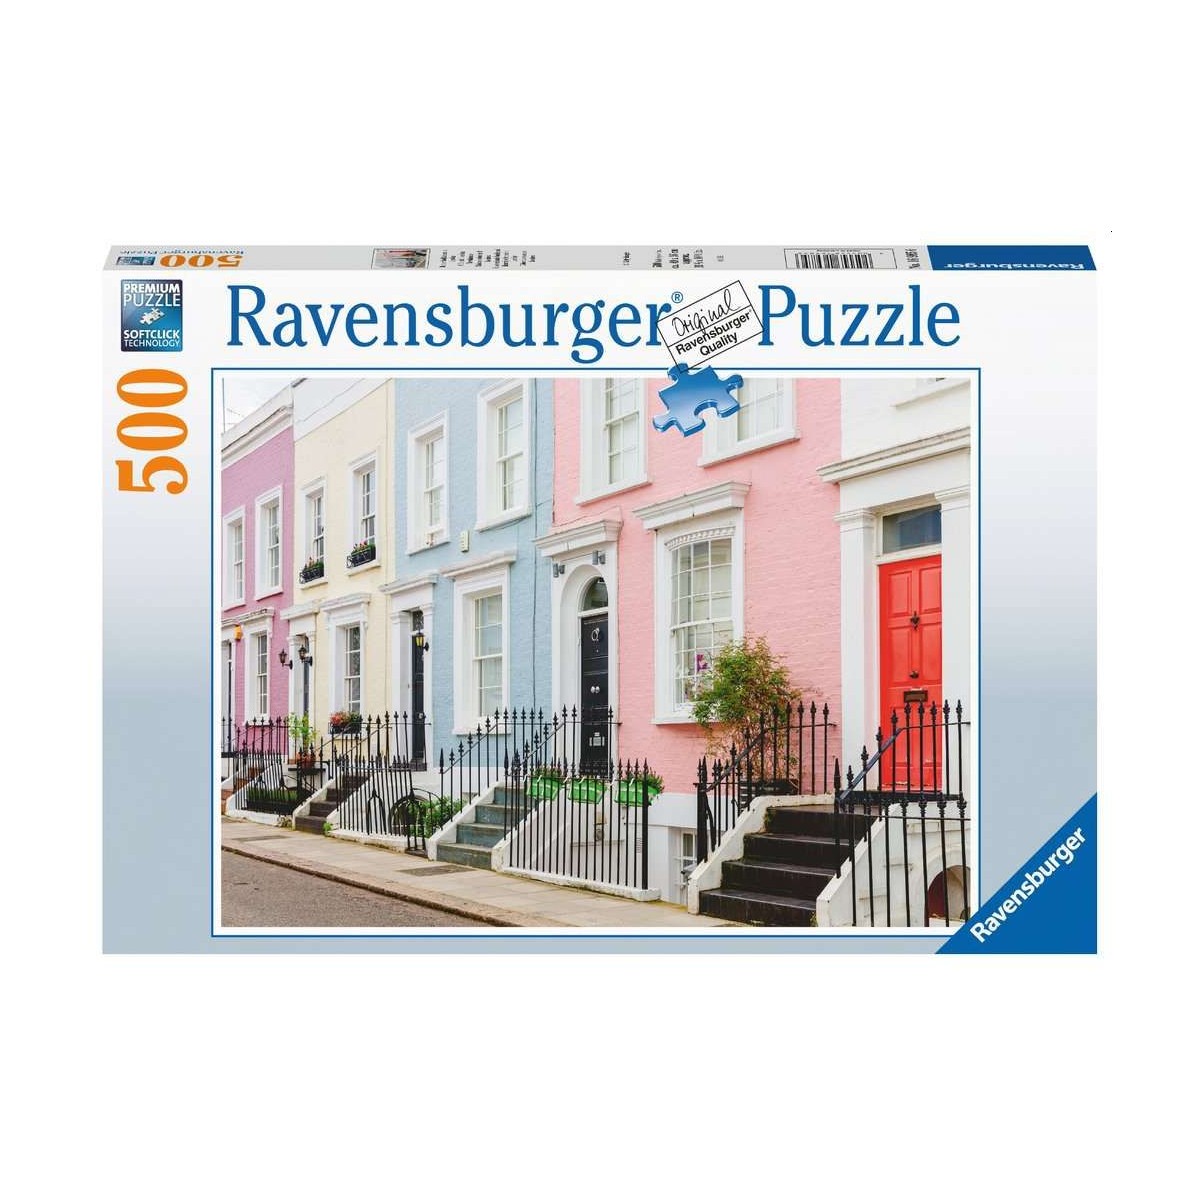 Ravensburger - Bunte Stadthäuser in London